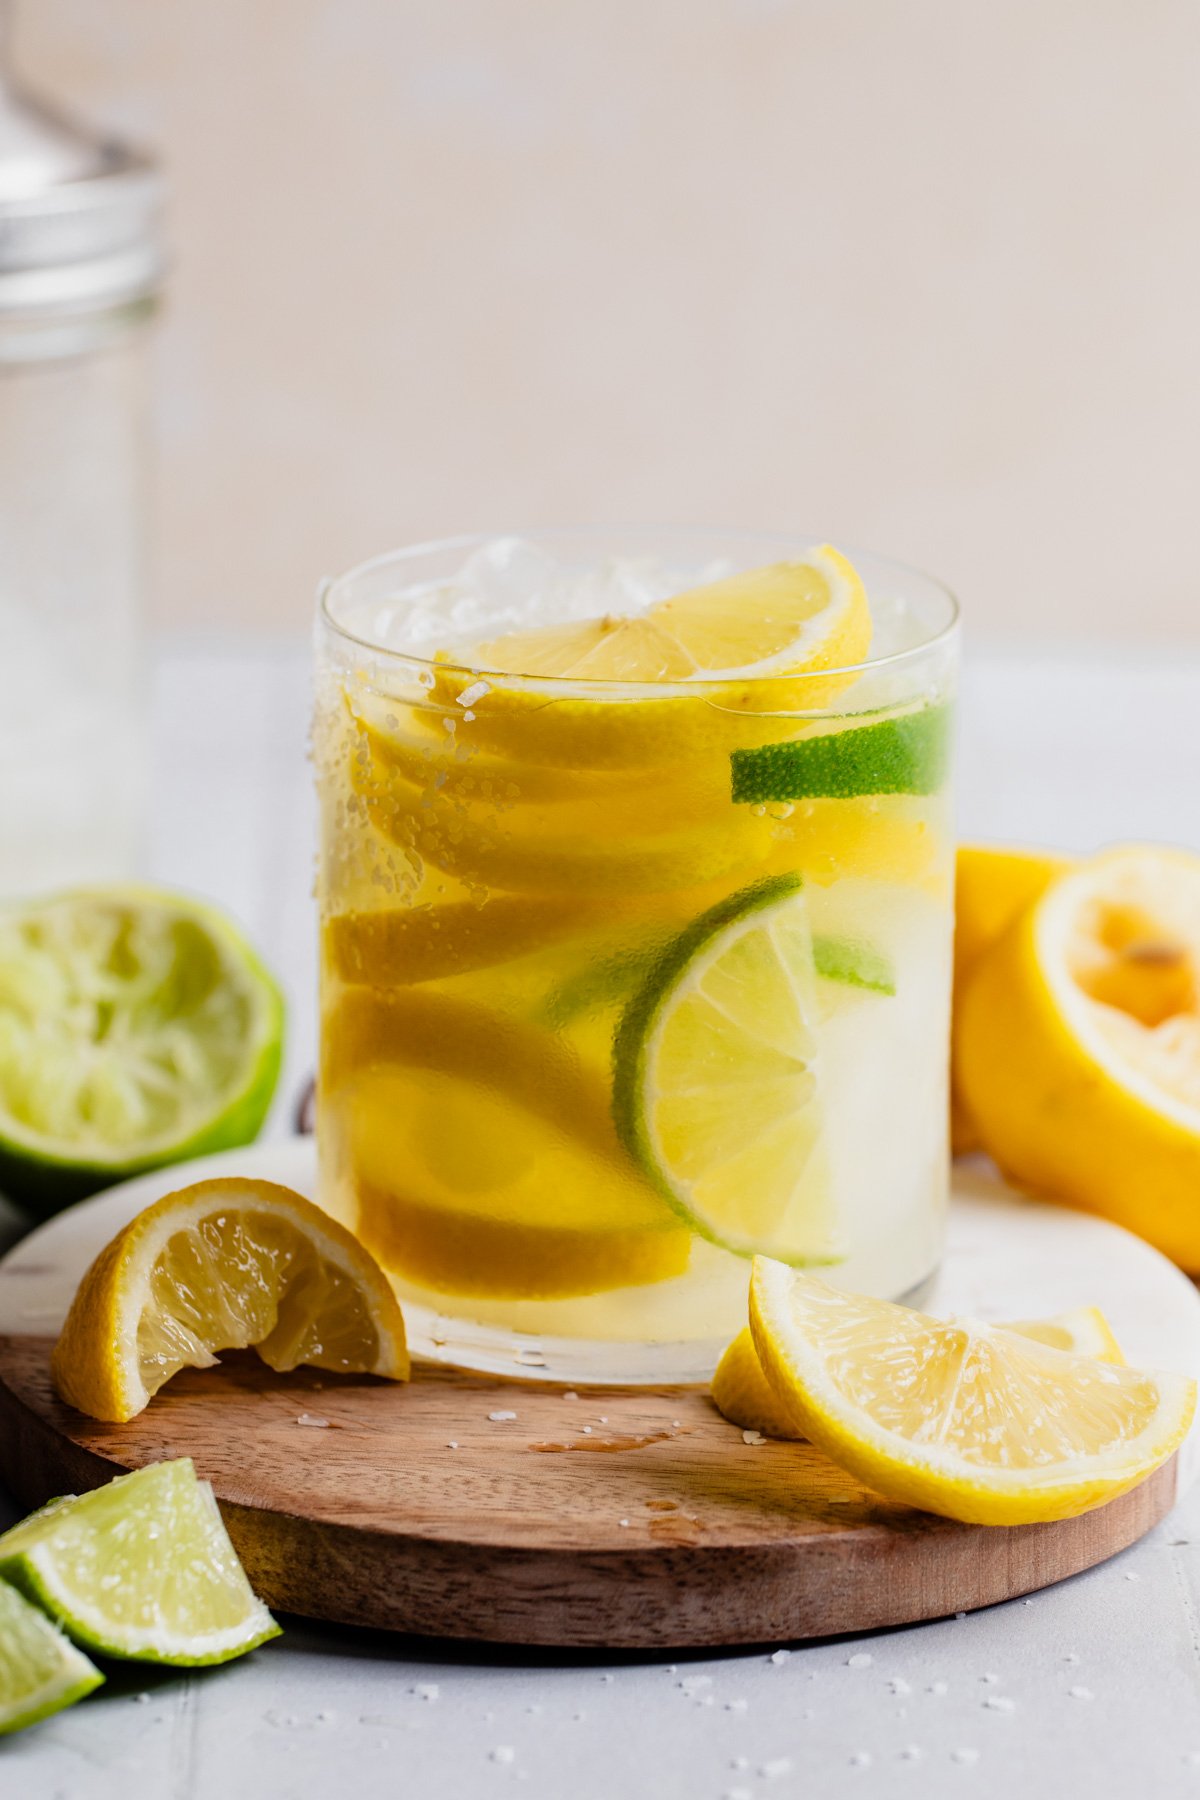 Glass filled with lemon slices and lemon margarita.